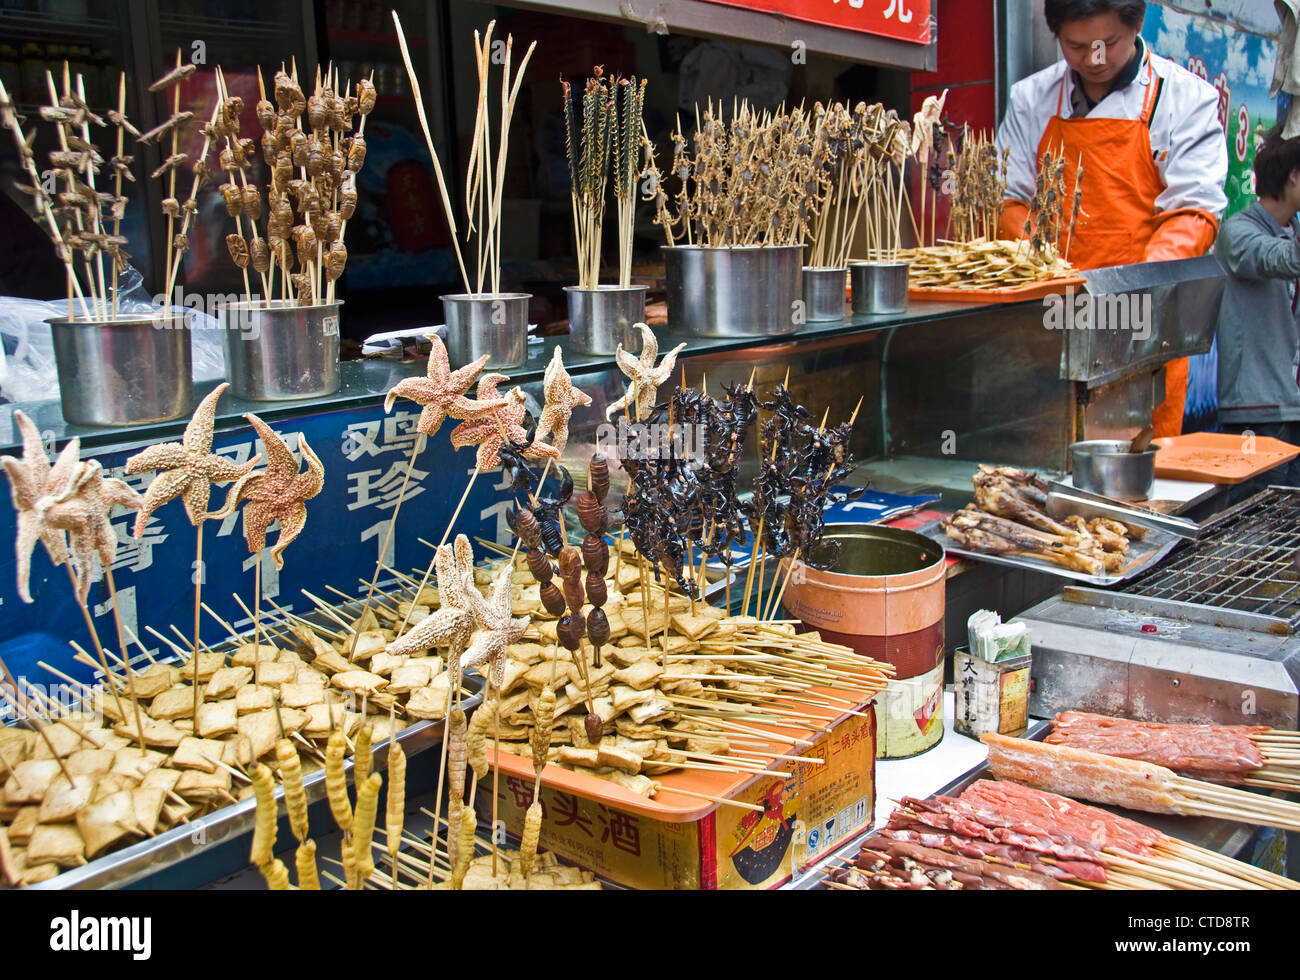 Gebratene Insekten, Bugs, Skorpione, Seesterne auf Stöcken bei Wangfujing Market Street - Peking, China Stockfoto